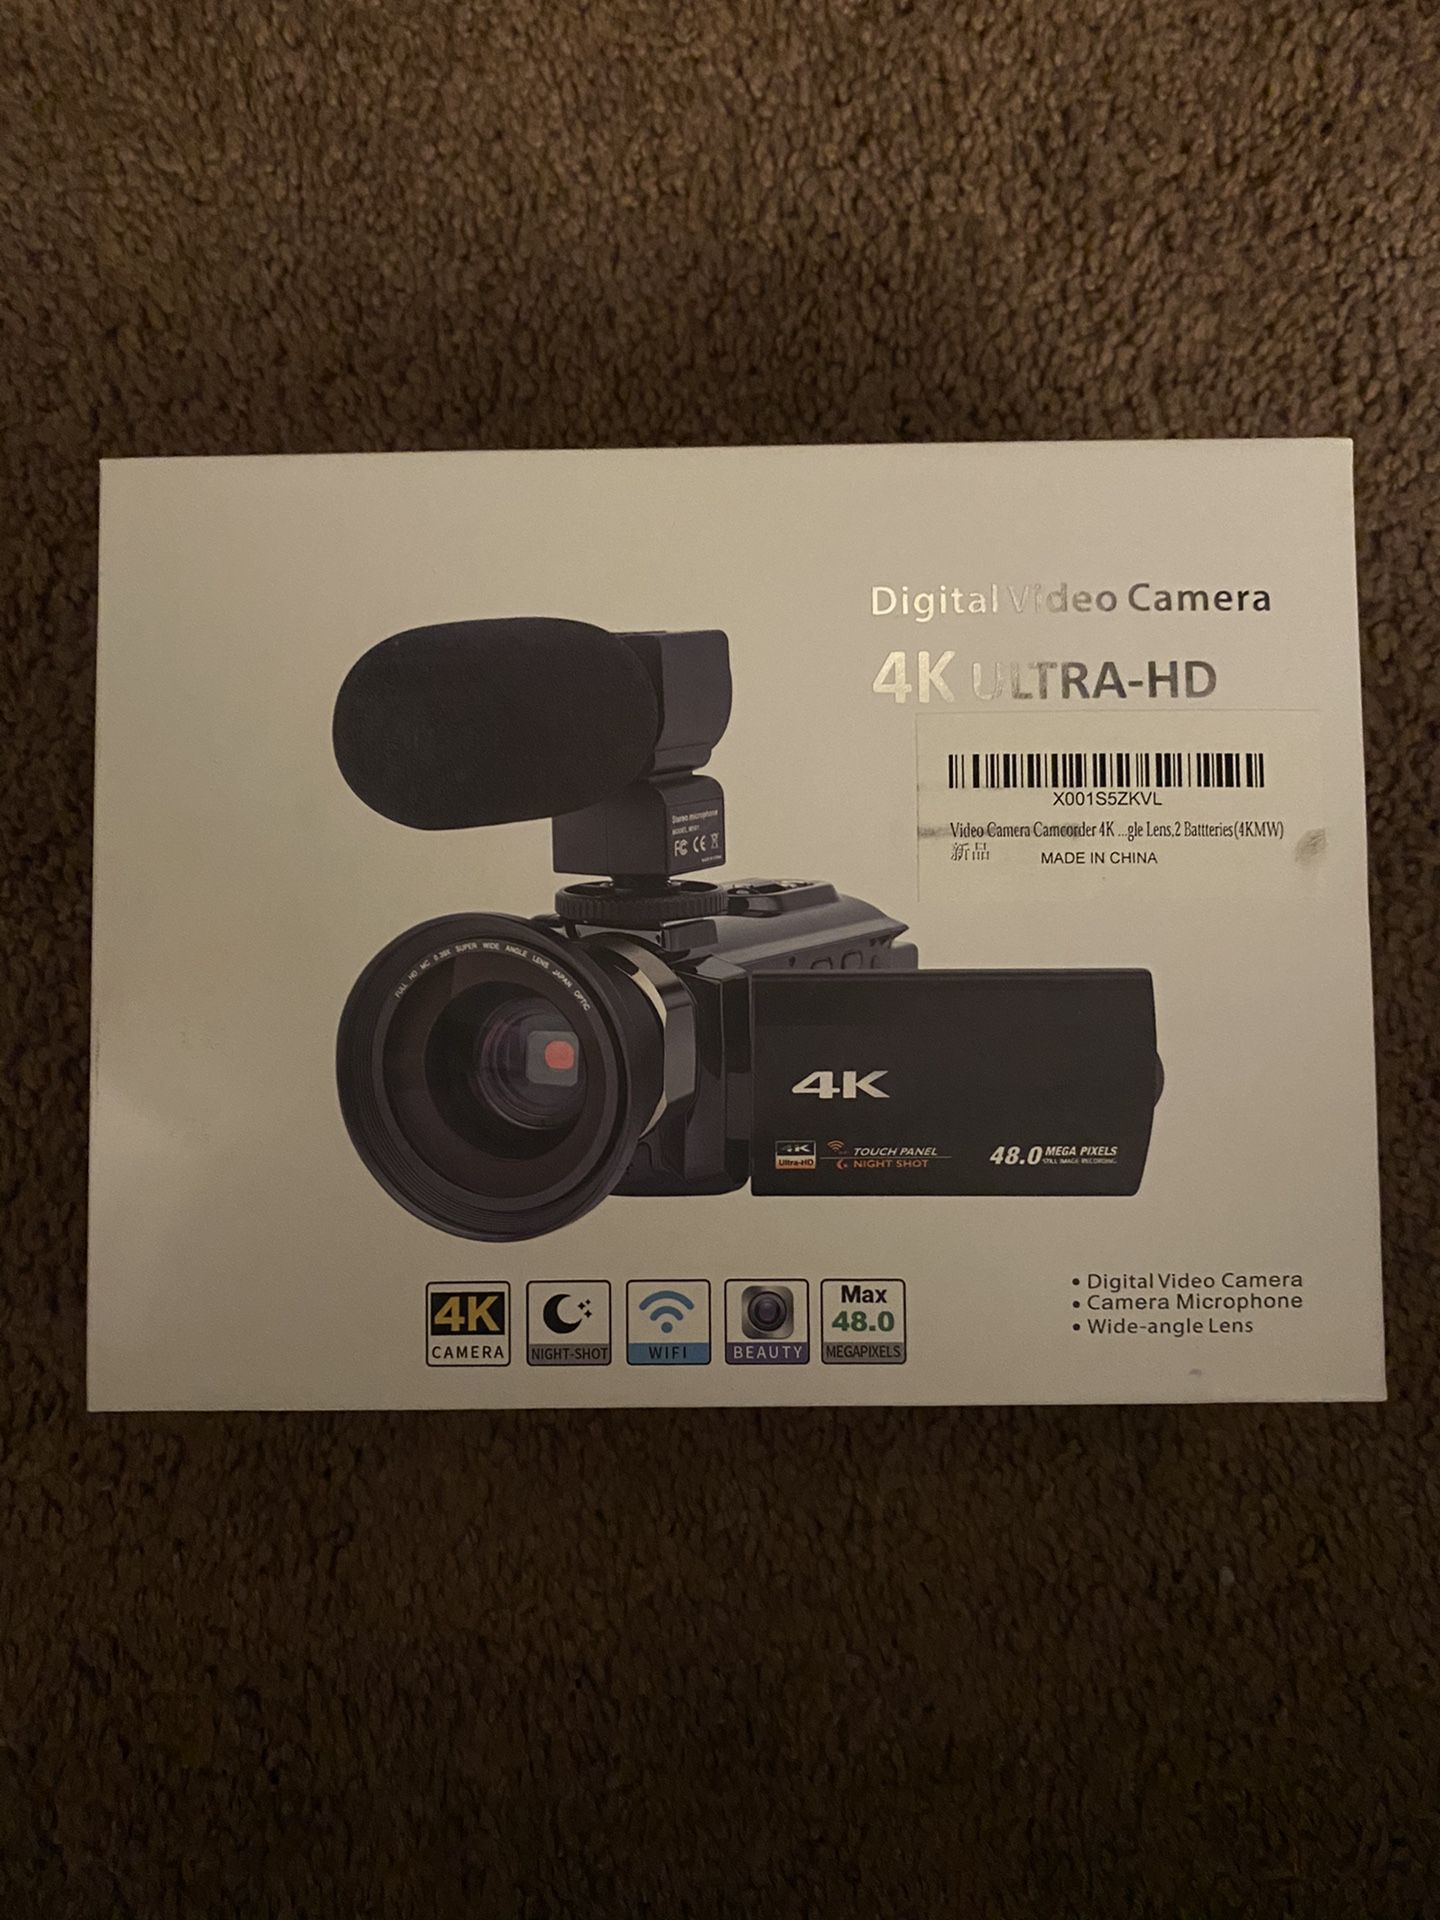 4K digital video camera